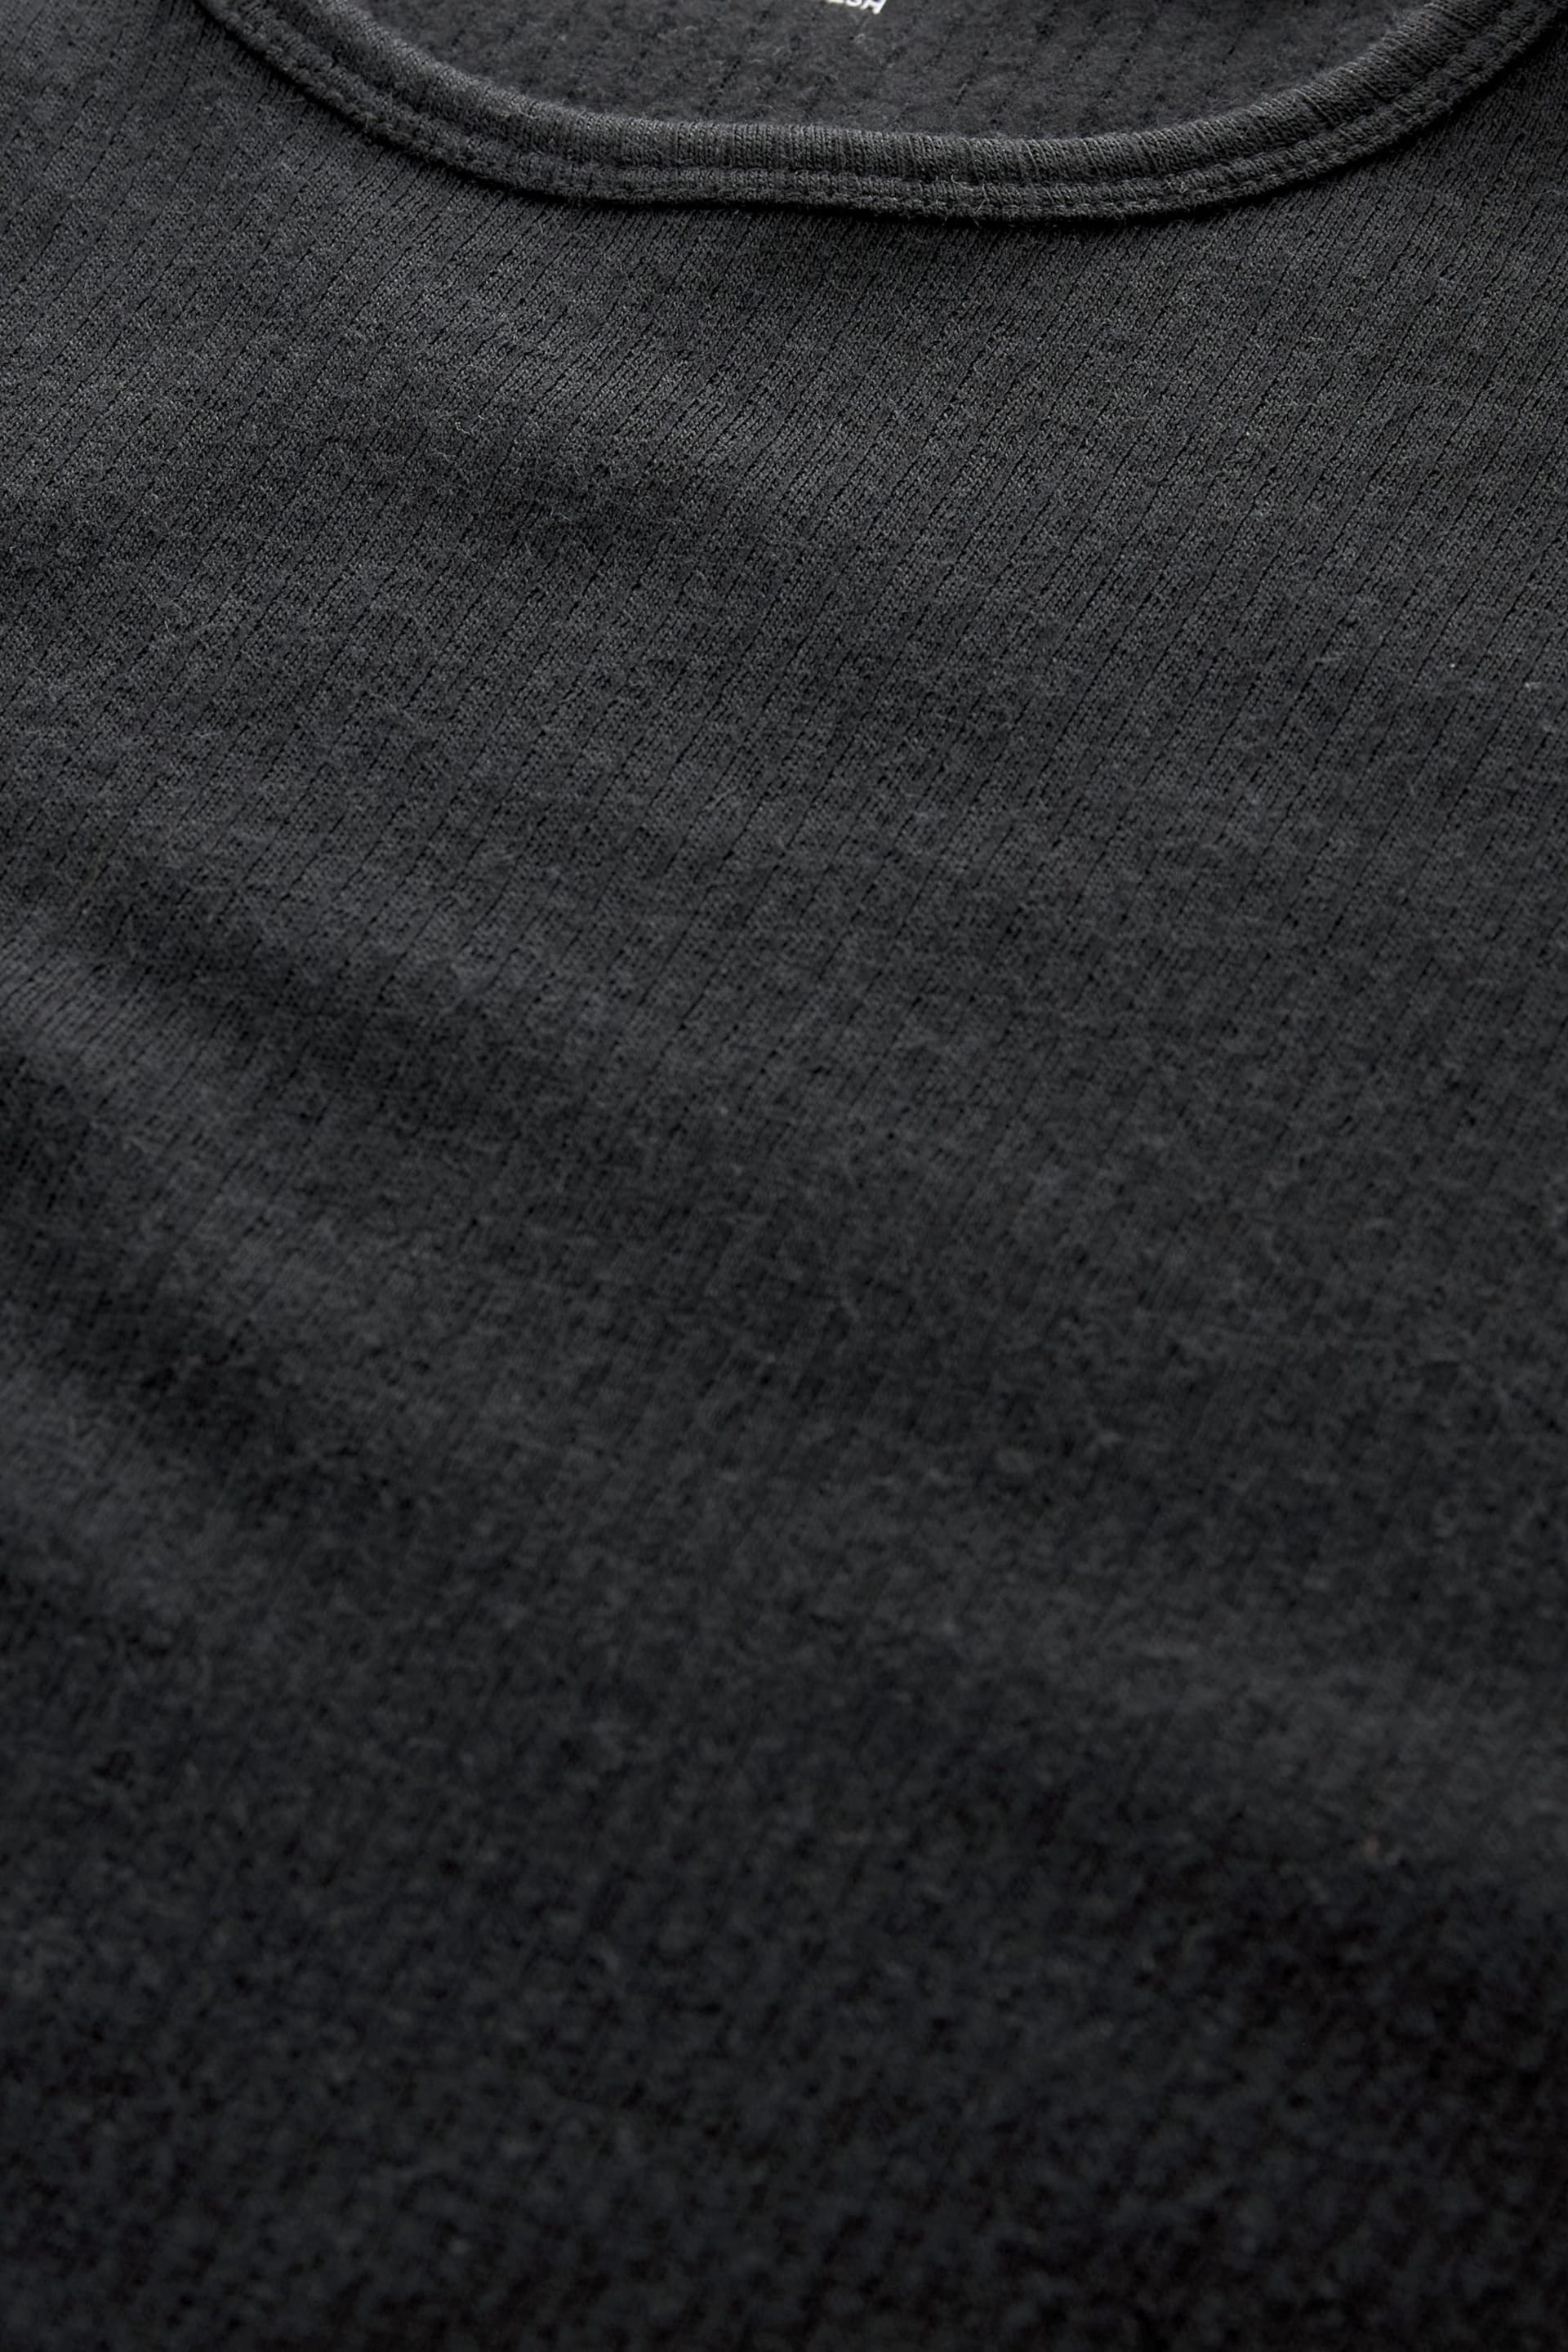 Black Long Sleeve Top Merino Blend Thermal Long Sleeve Top - Image 8 of 9